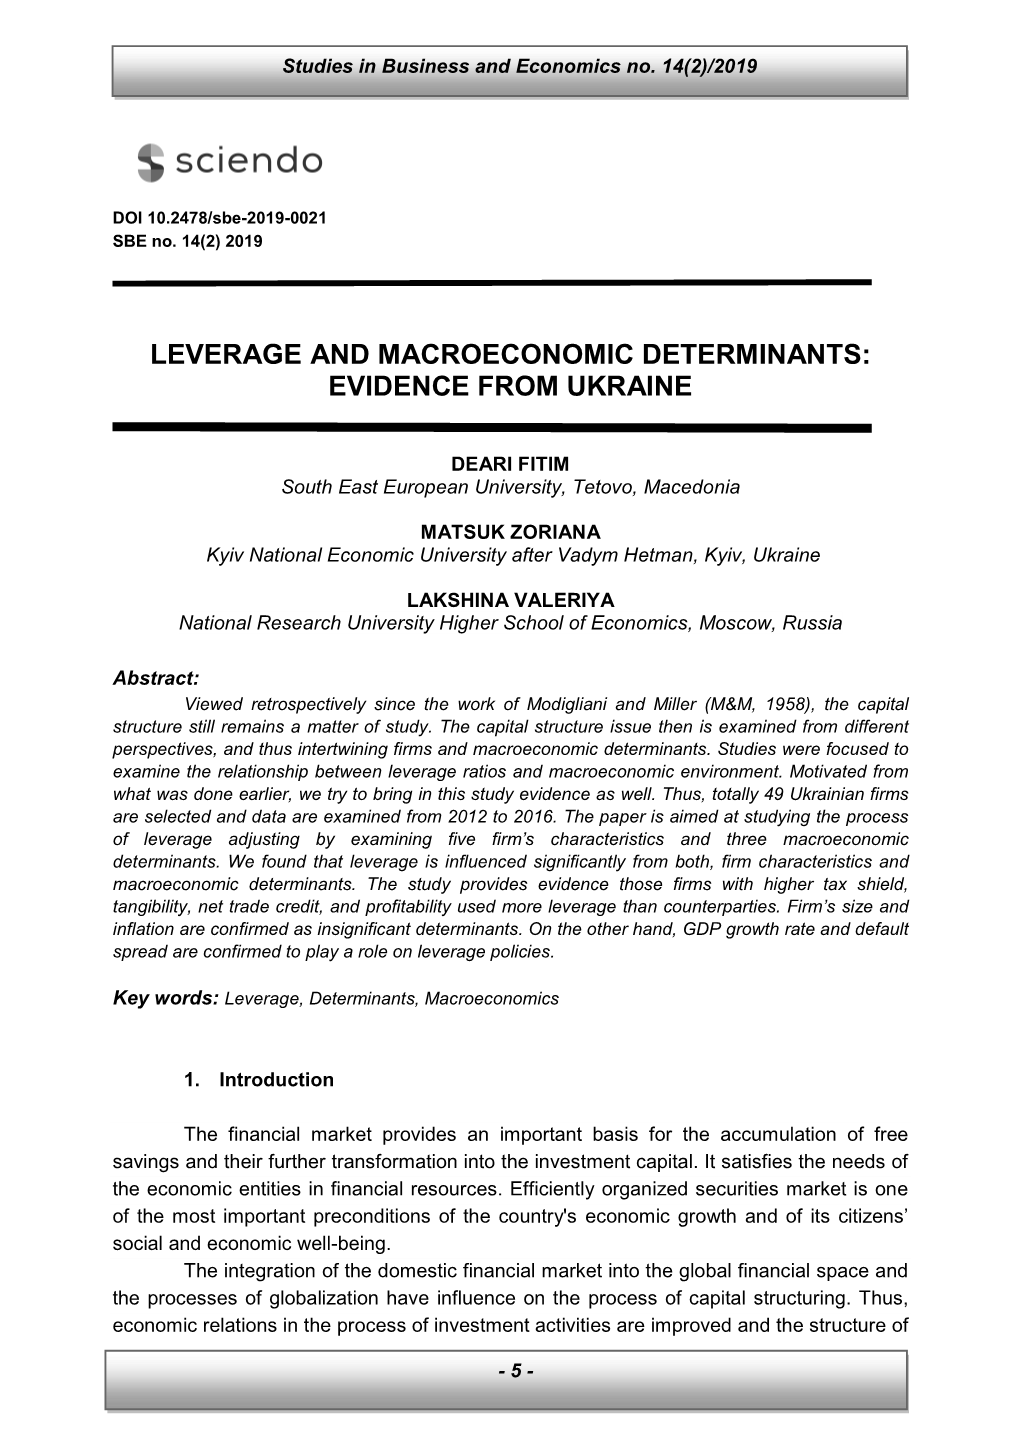 Leverage and Macroeconomic Determinants: Evidence from Ukraine